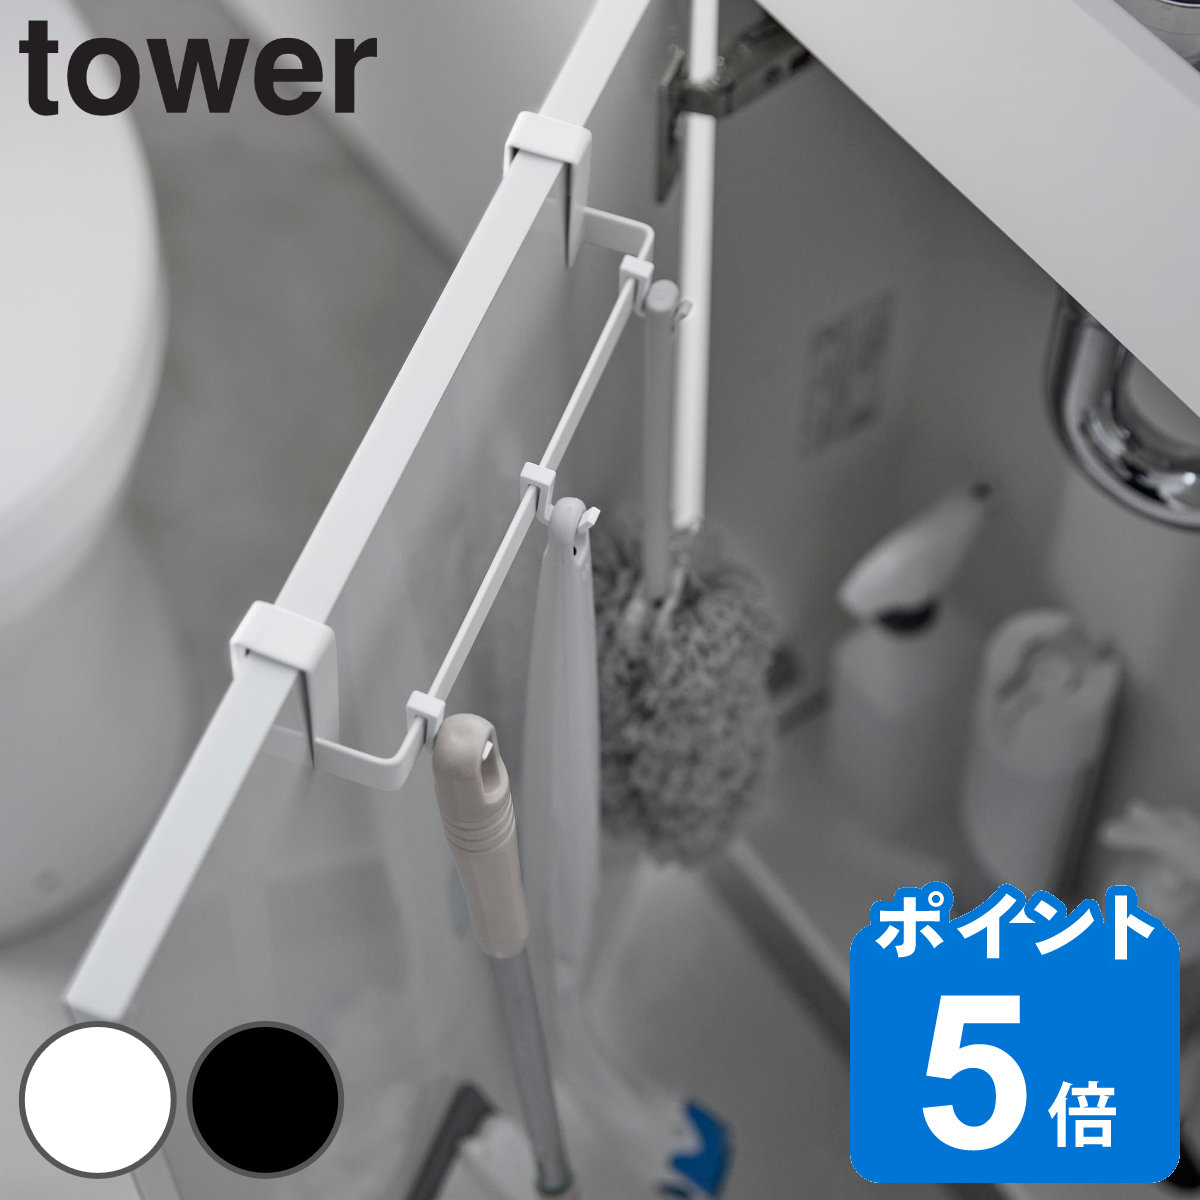 山崎実業 tower トイレキャビネット扉ハンガー タワー